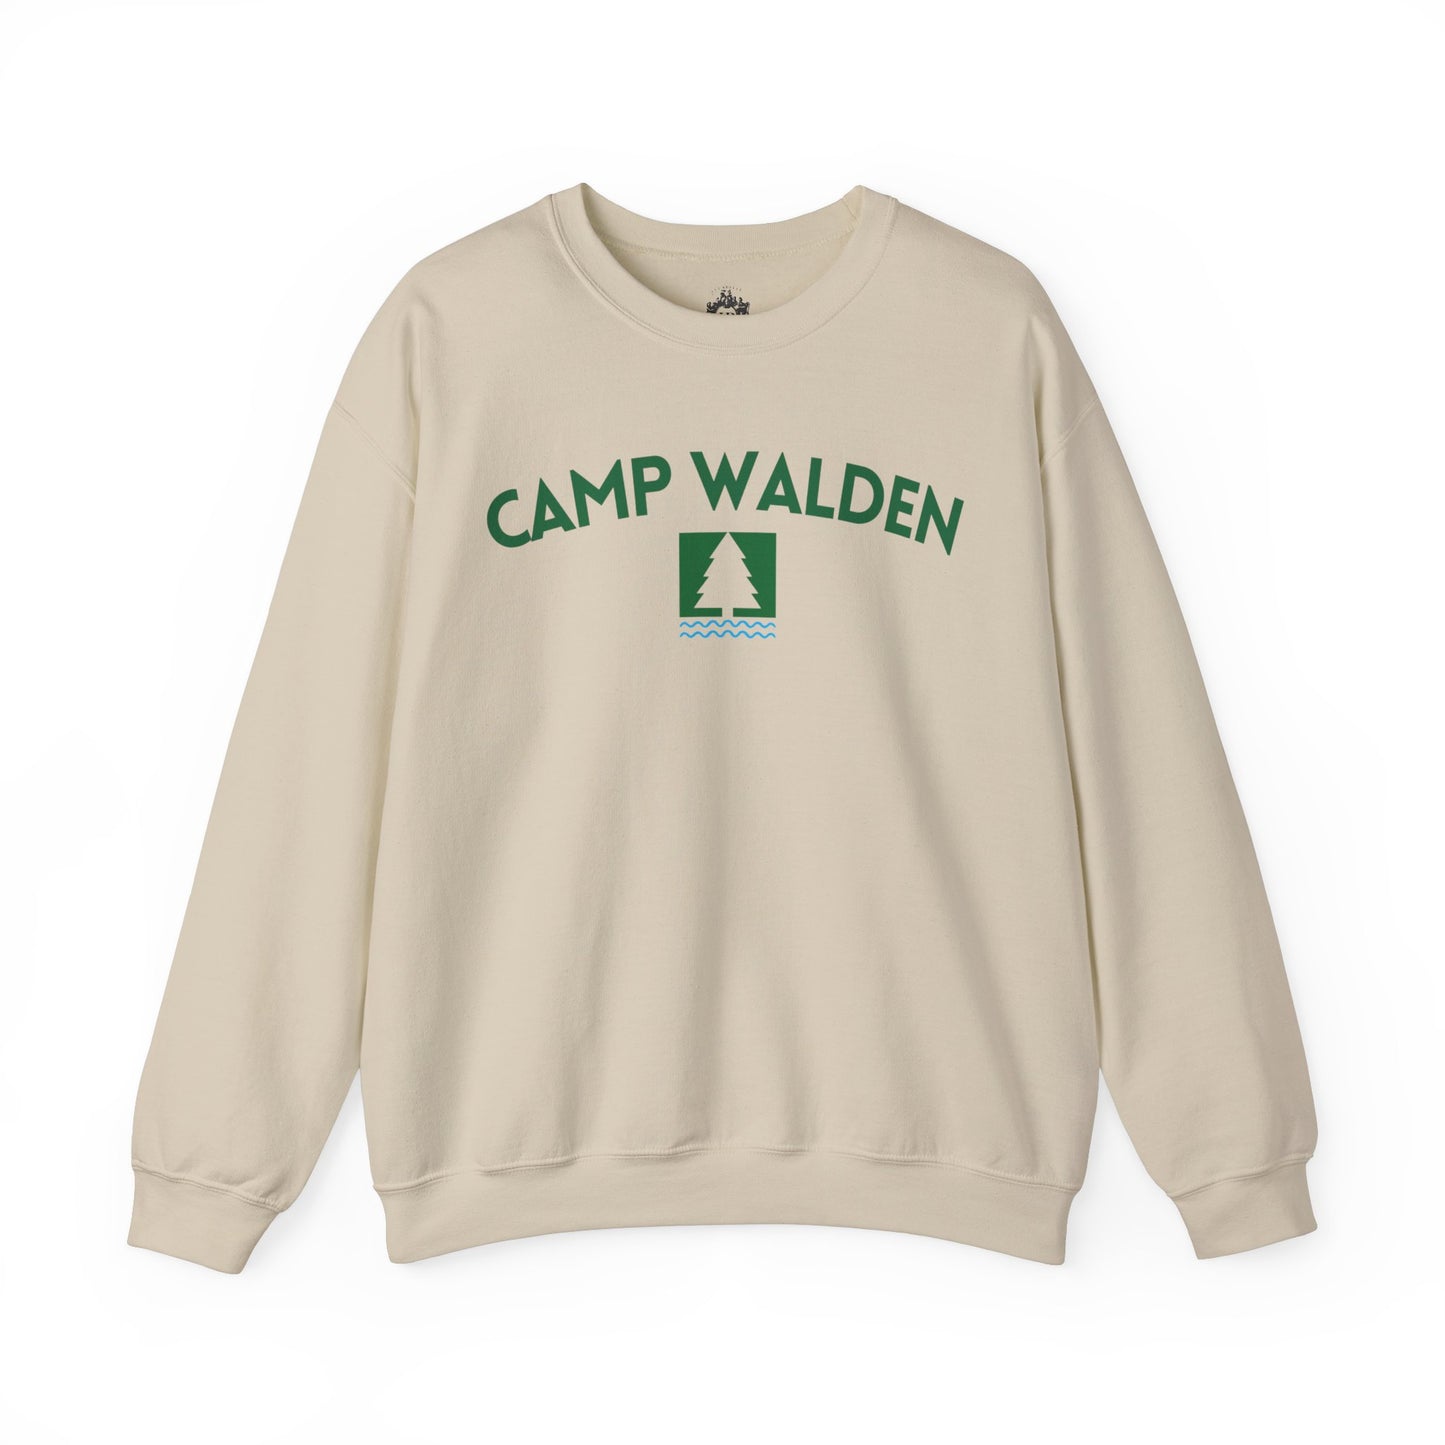 Camp Walden Crew